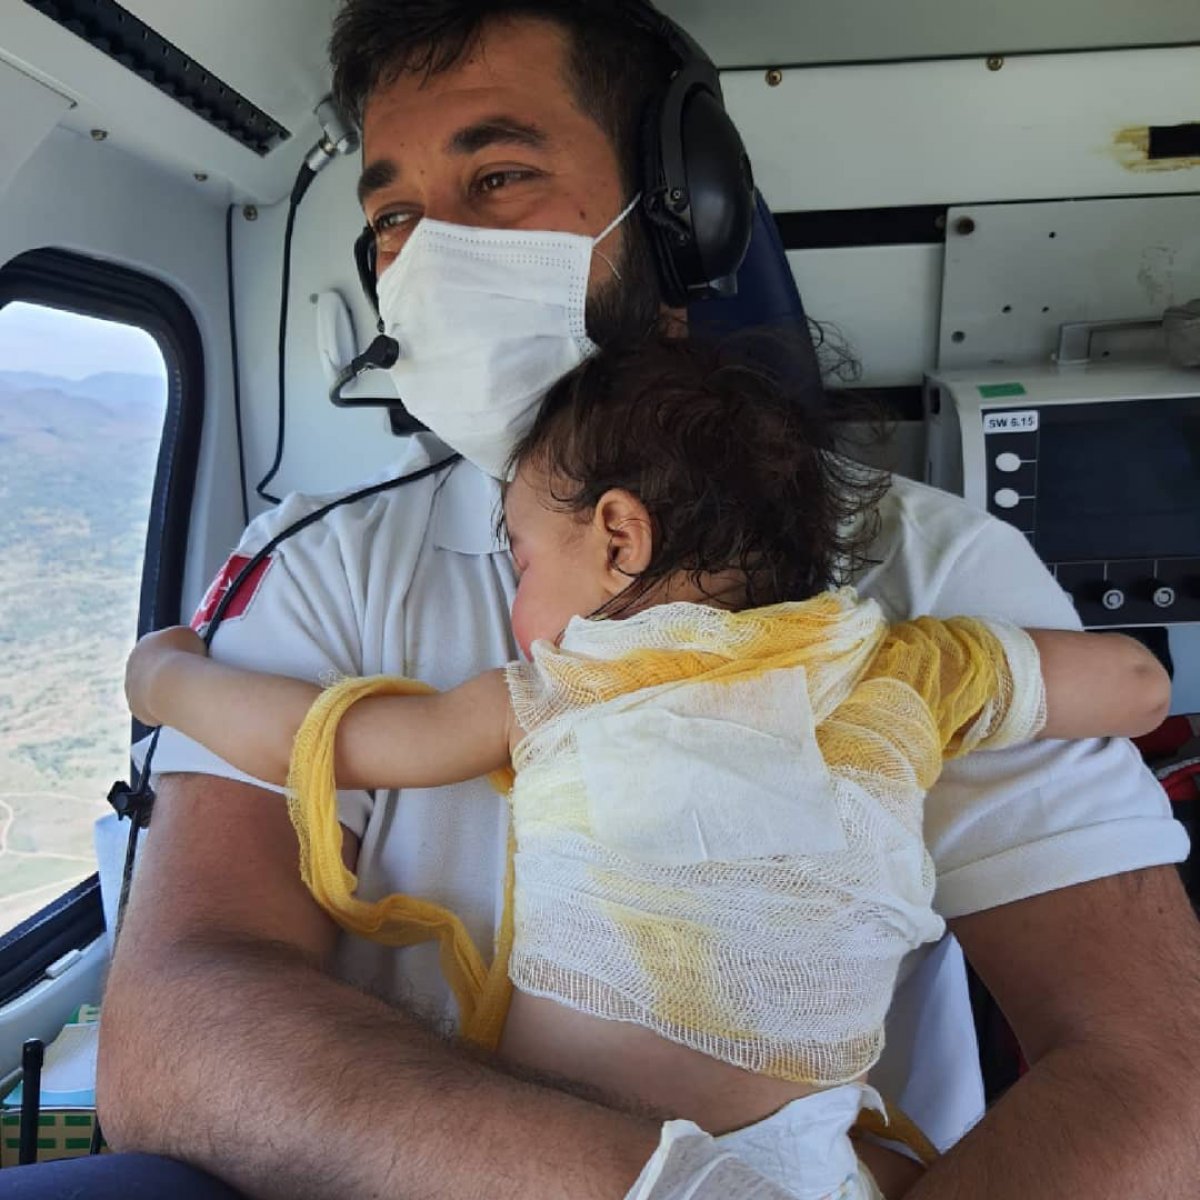 Afyonkarahisar’da yanan bebeği kucağında taşıyan sağlıkçı #3